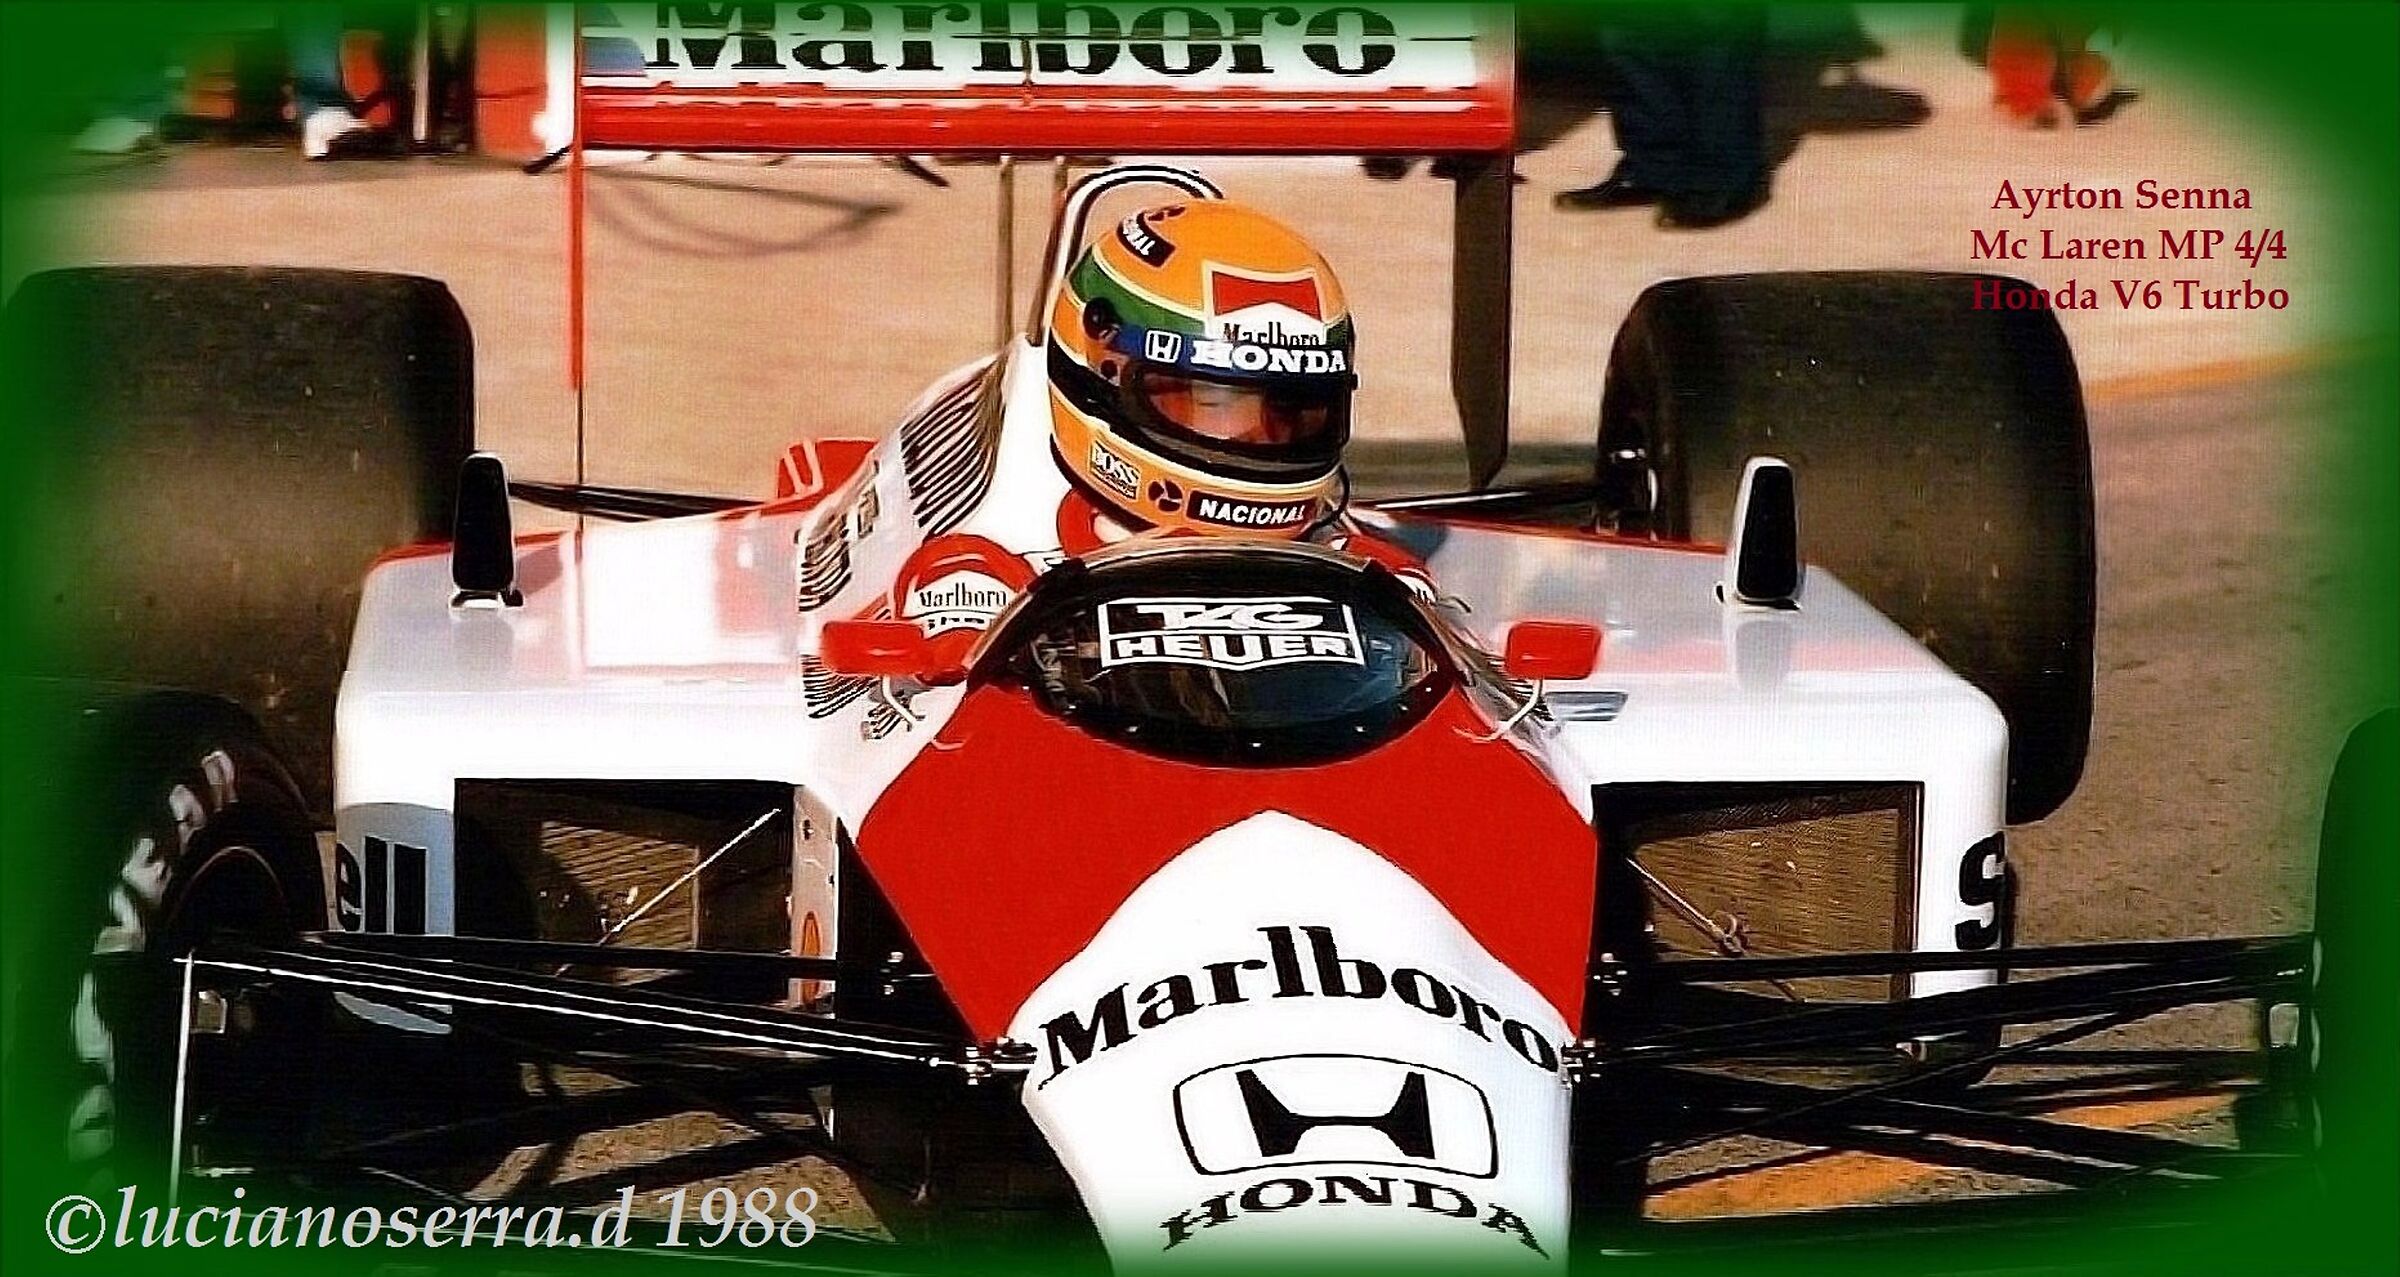 Ayrton Senna on McLaren MP 4/4 Honda V6 Turbo-1987...